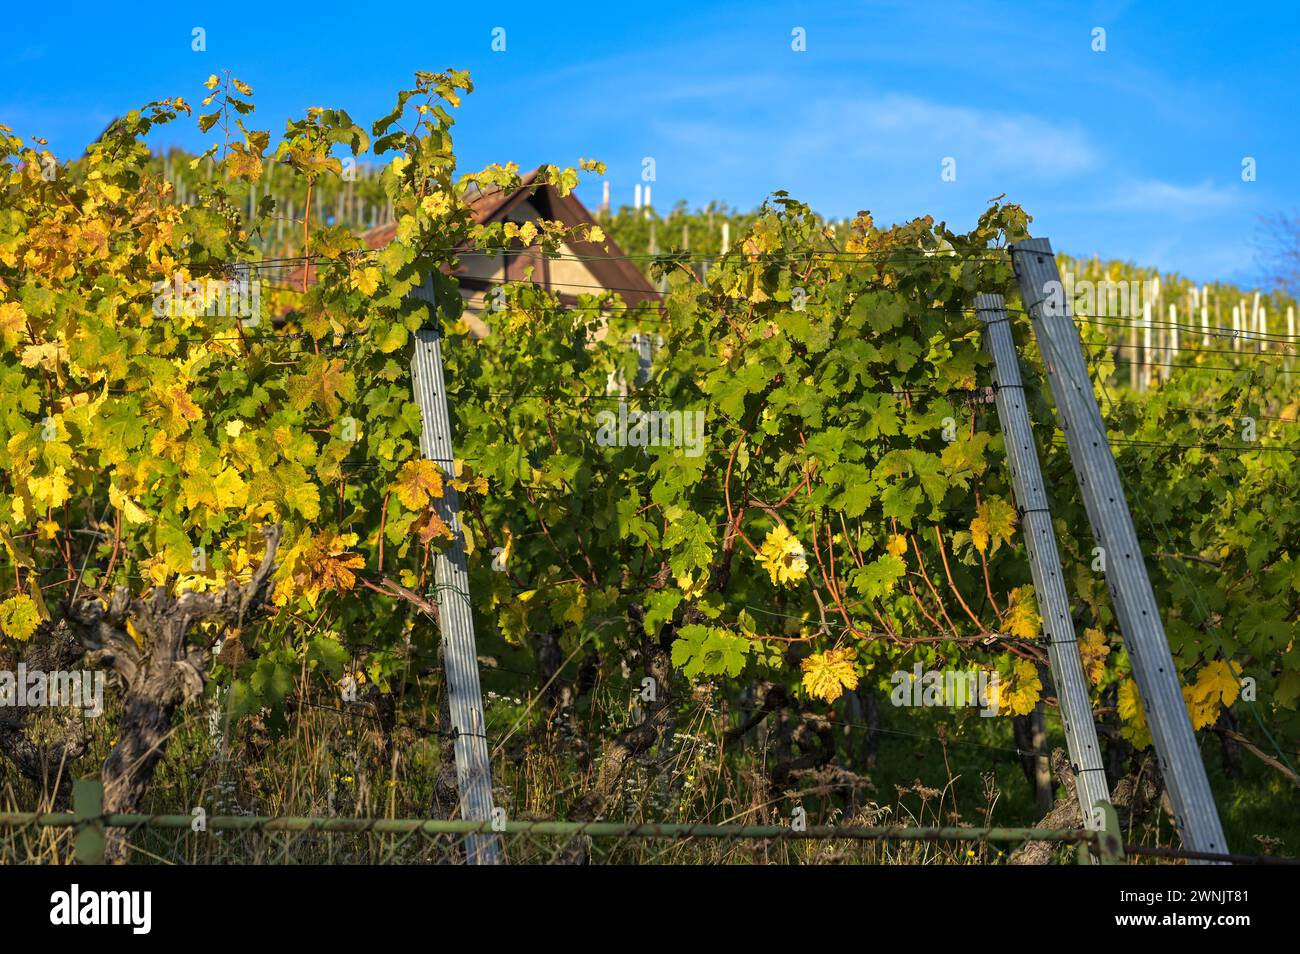 Vignoble après les vendanges : vignes aux feuilles très tentaculaires aux couleurs vives de l'automne. Prise en octobre près de Stuttgart. Banque D'Images